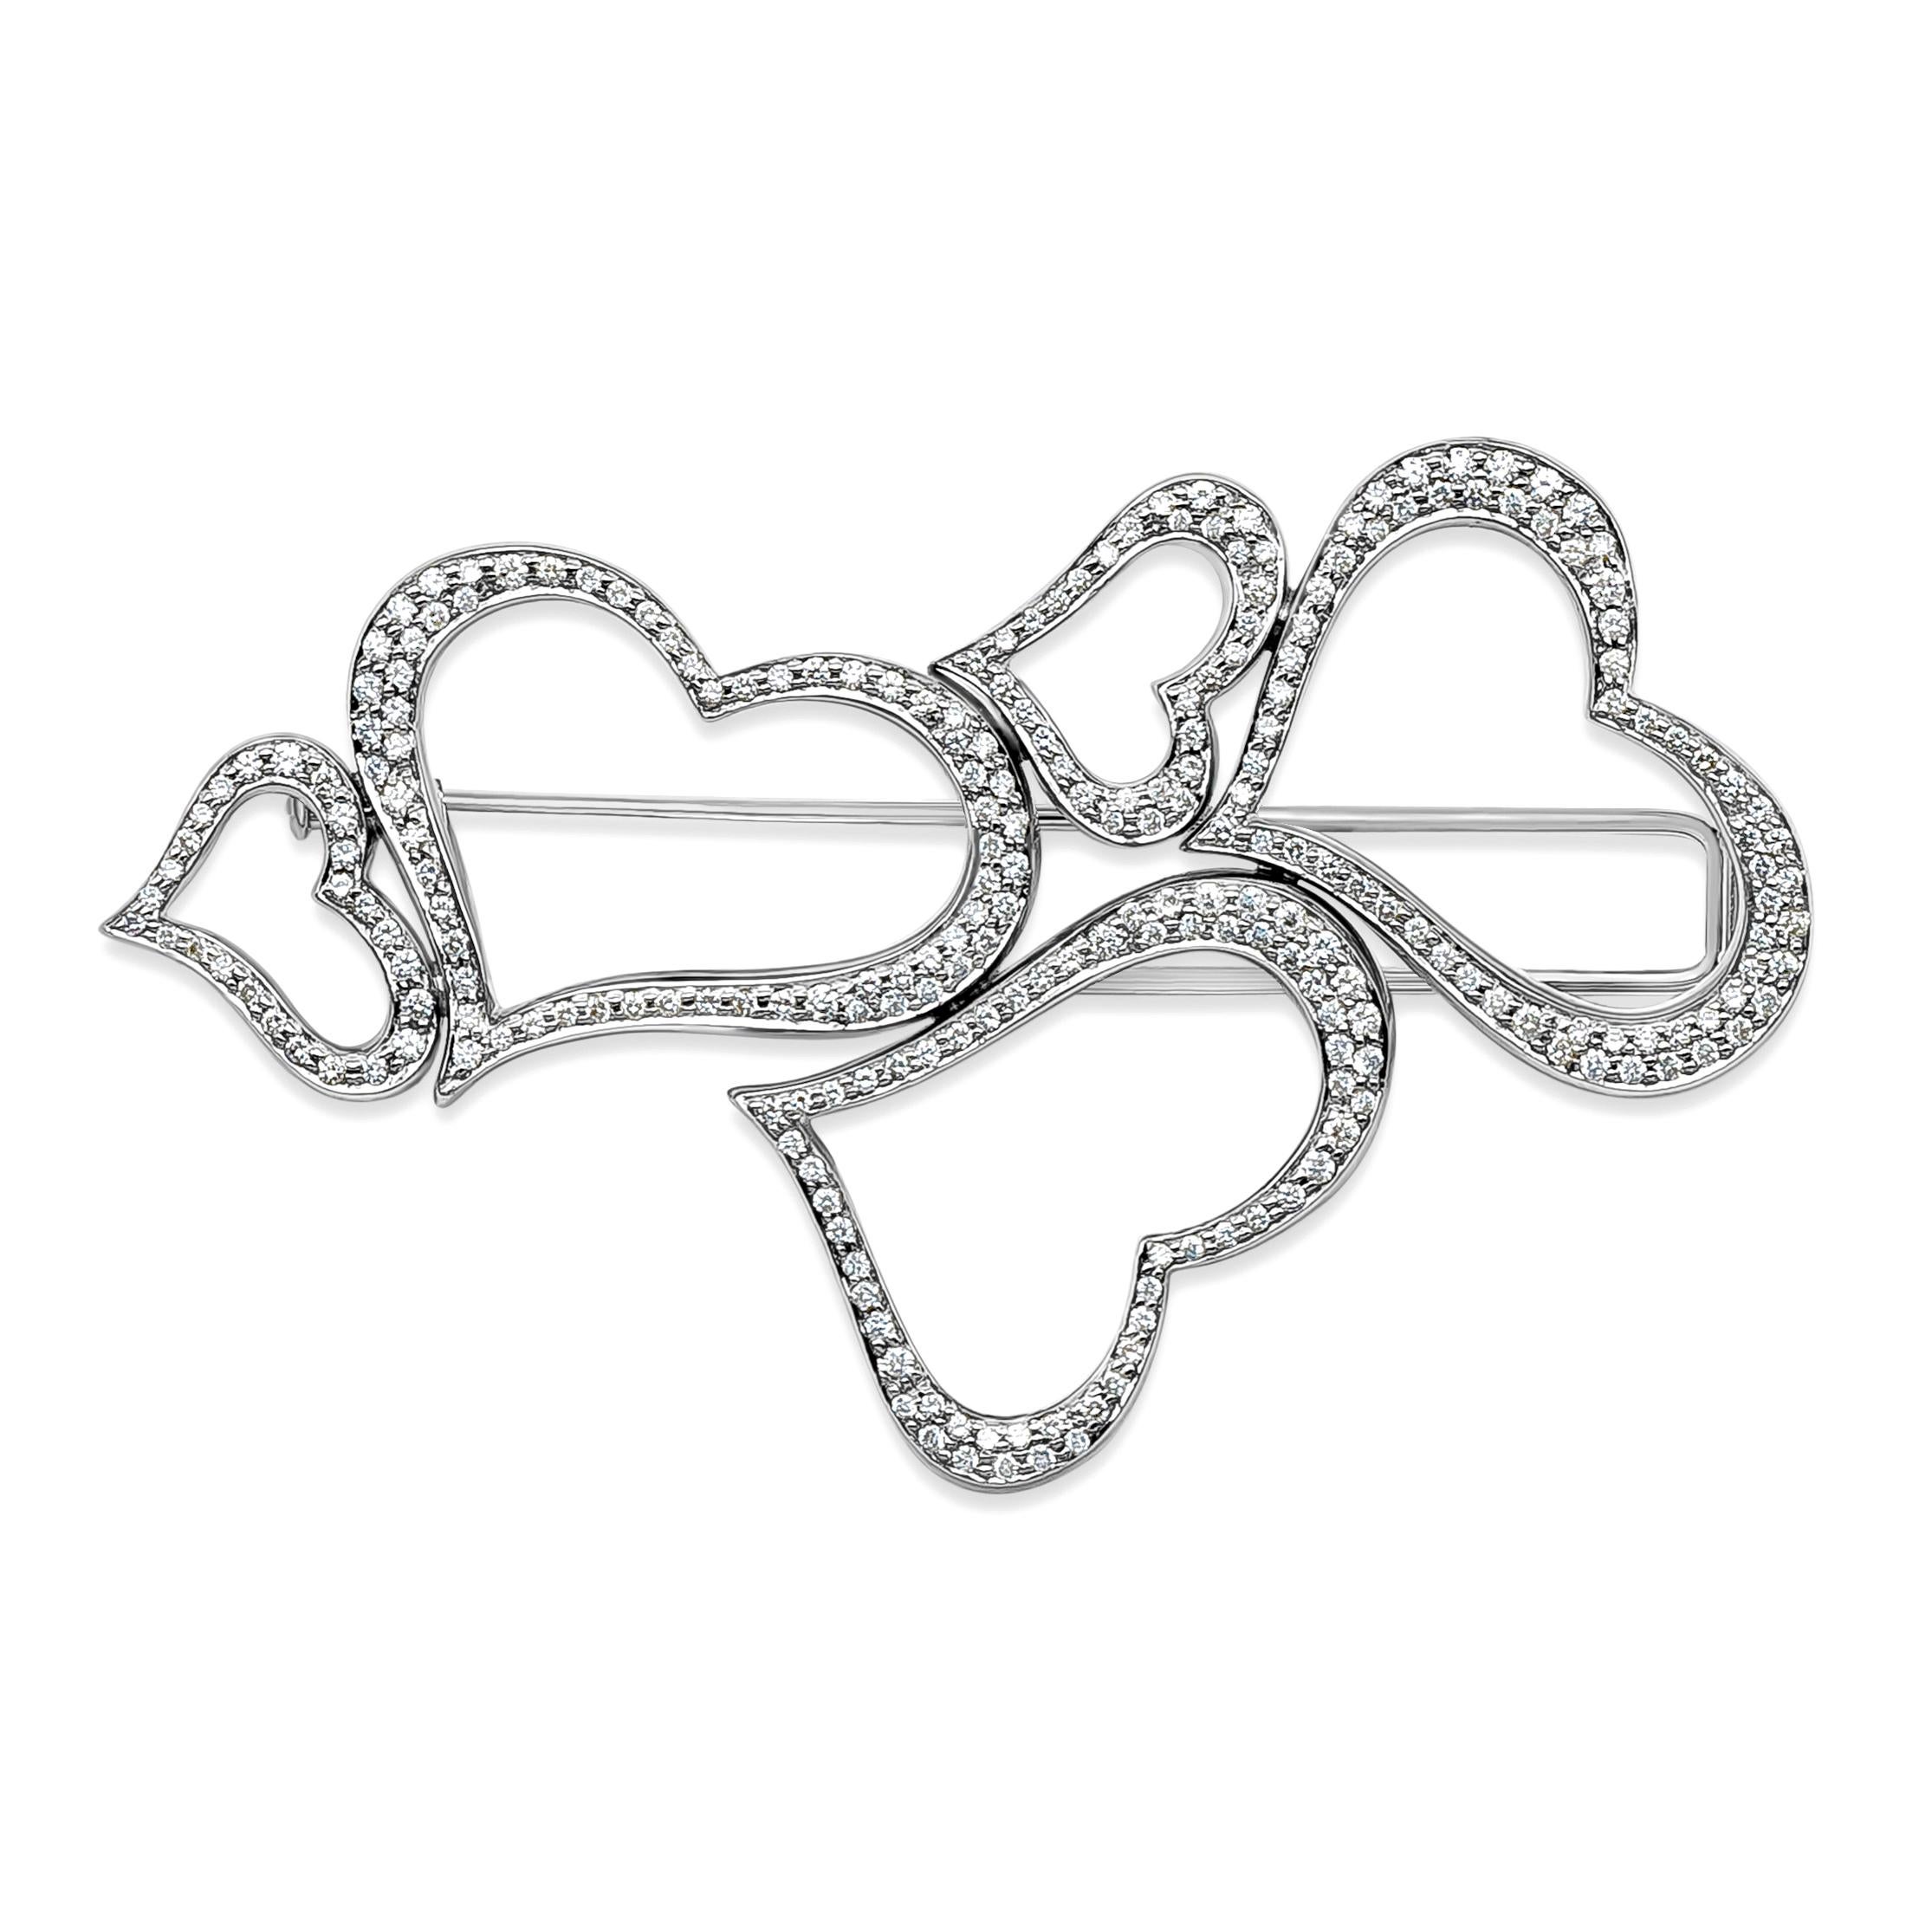 Diese einzigartige und klassische Herzbrosche präsentiert 2,30 Karat runde Diamanten in Brillantform, DEF in Farbe und VVS+ in Reinheit. Wunderschön in einem durchbrochenen Herz-Design und Made mit 18K Weißgold gesetzt. 3,10 Zoll in der Länge und